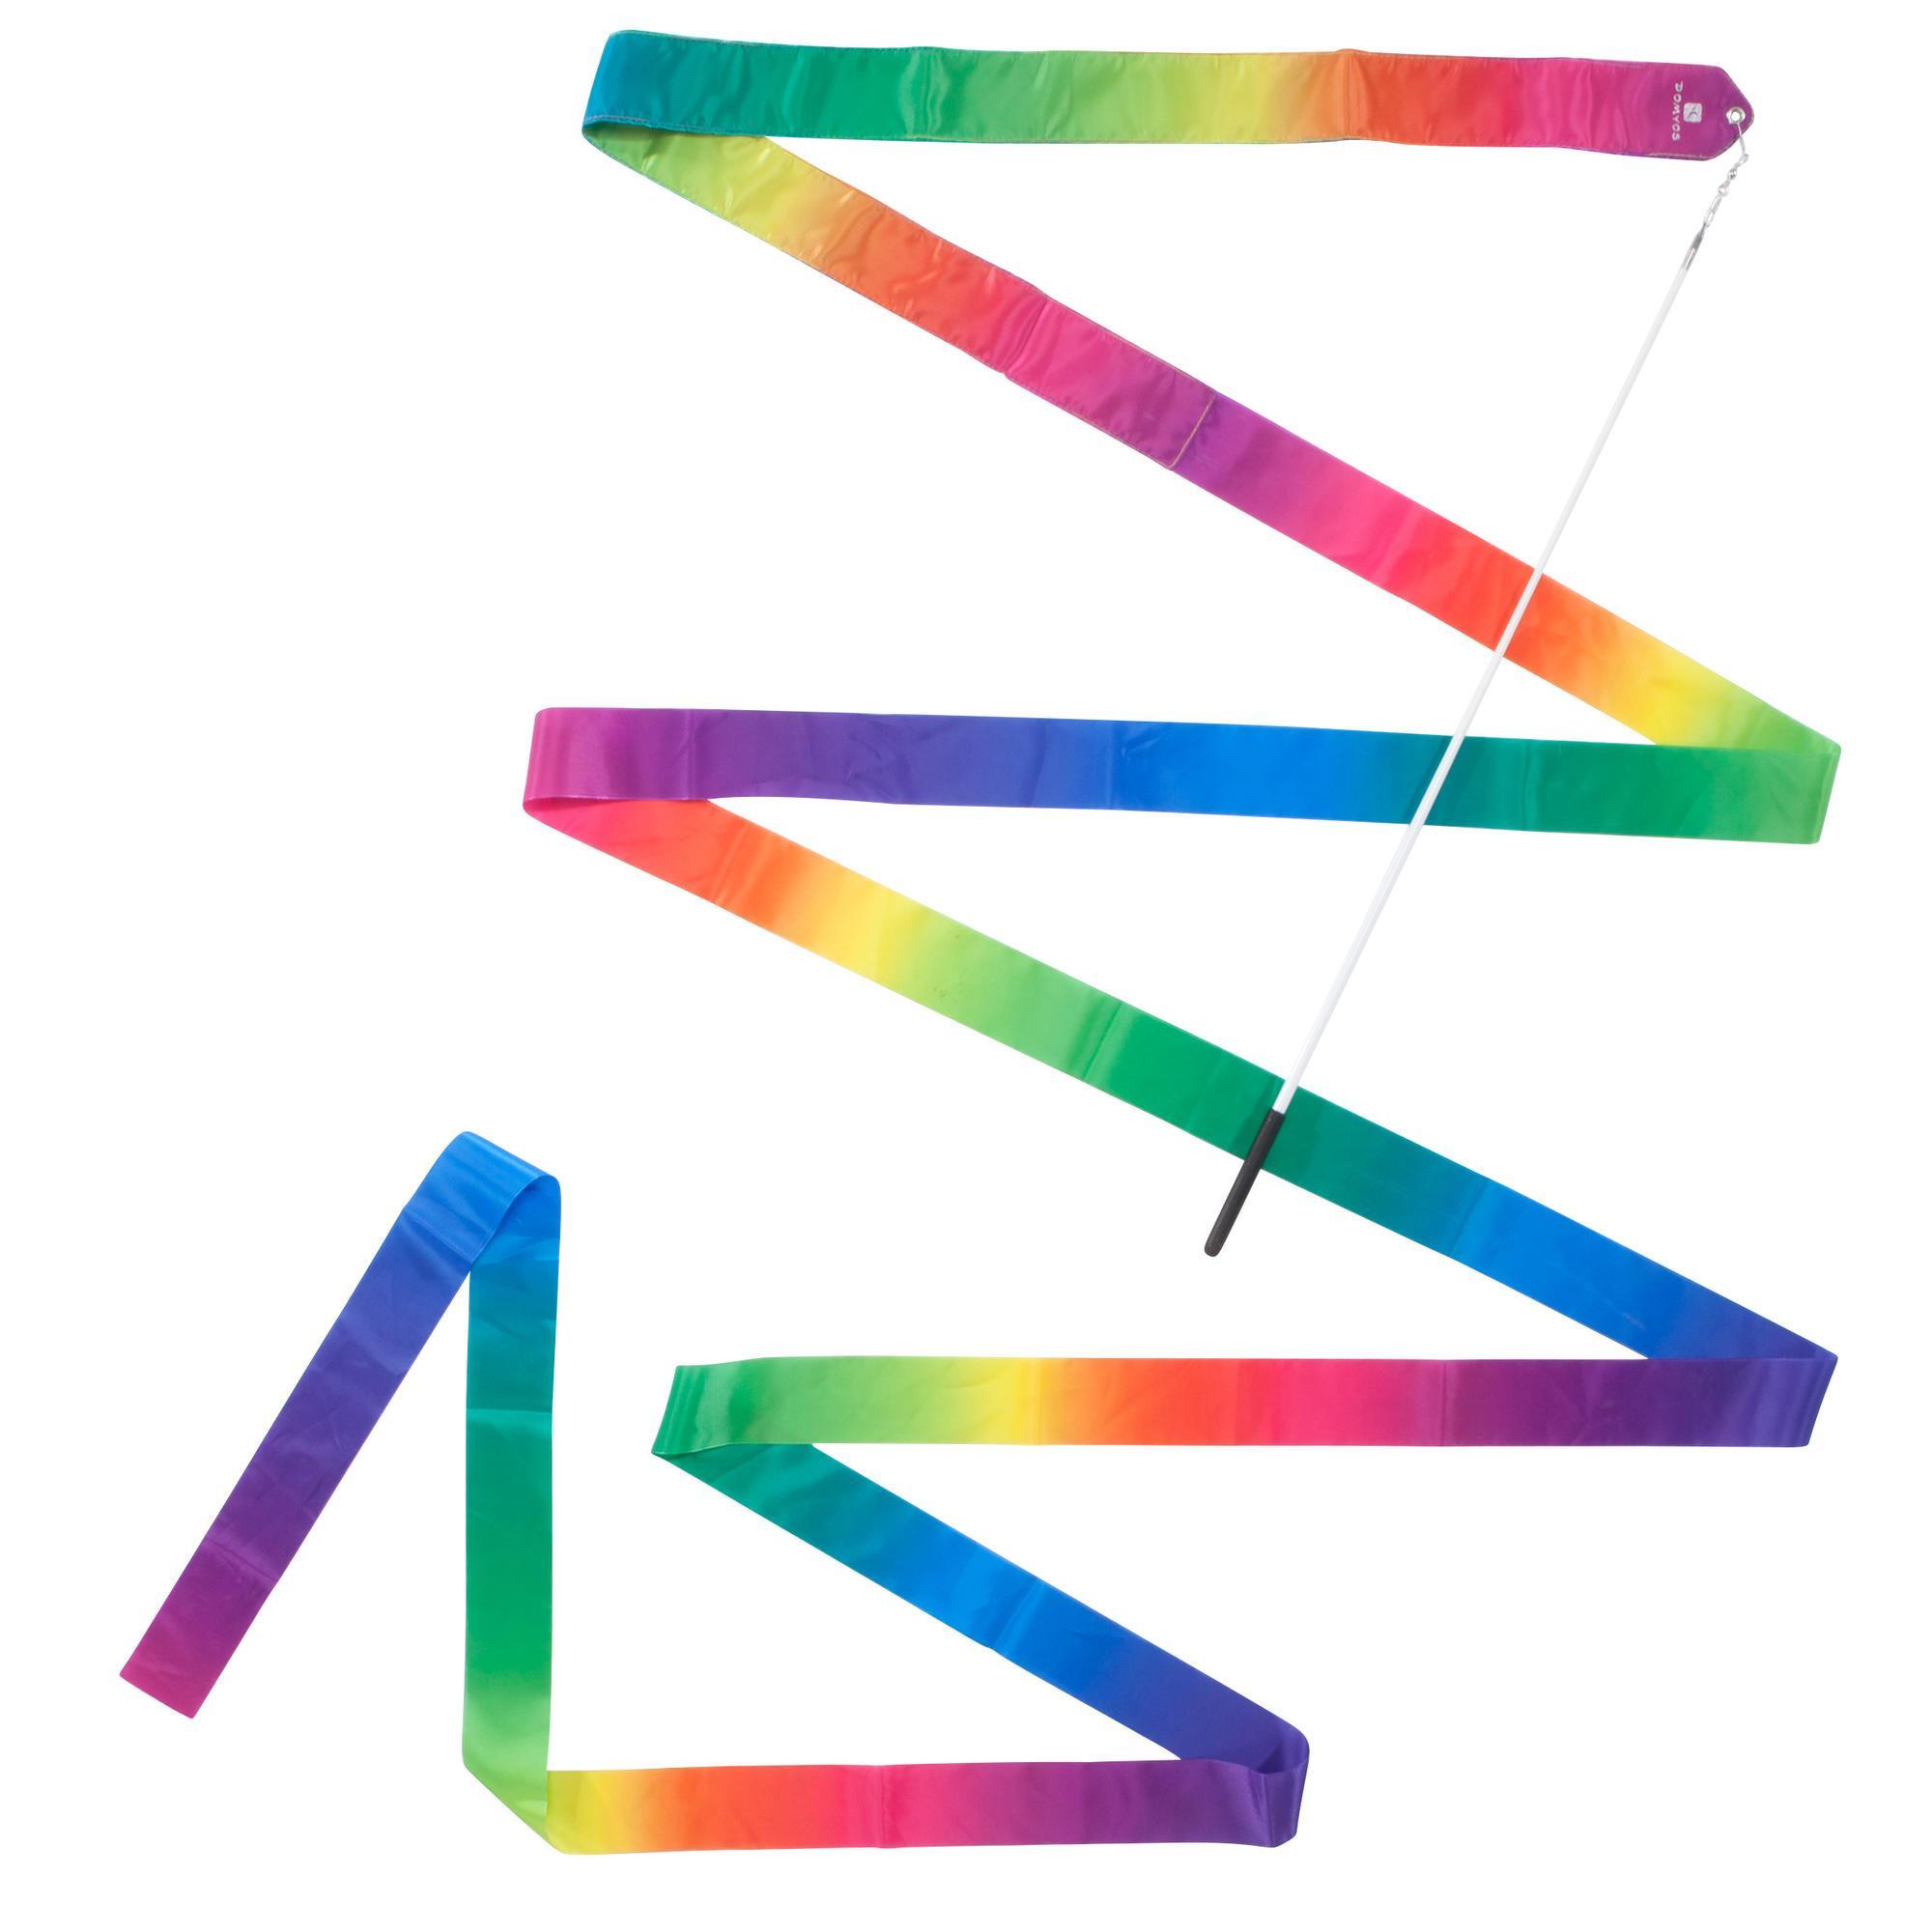 Panglică Multicoloră Gimnastică Ritmică 6 m La Oferta Online decathlon imagine La Oferta Online